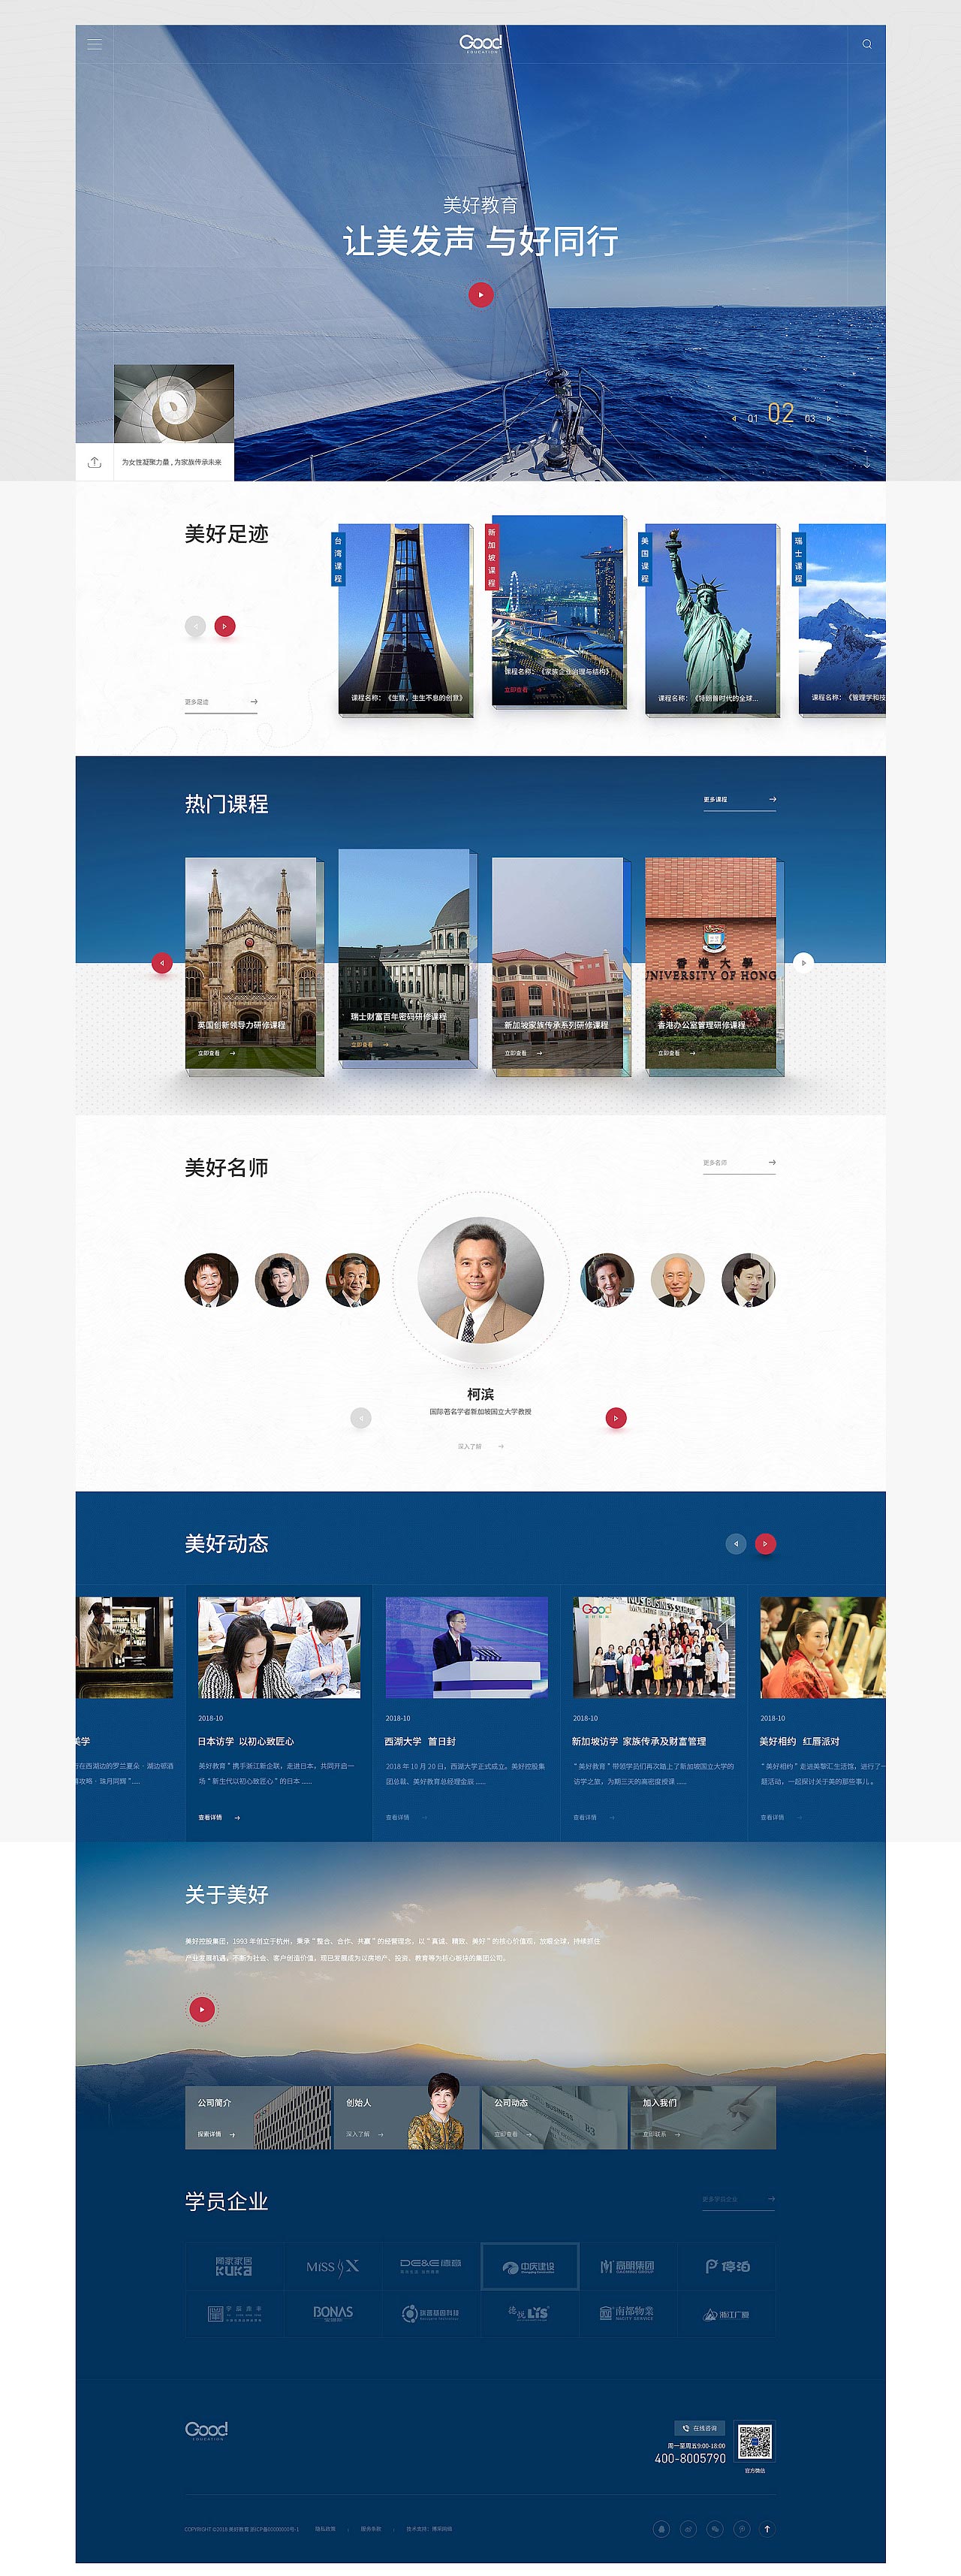 广州网站建设公司